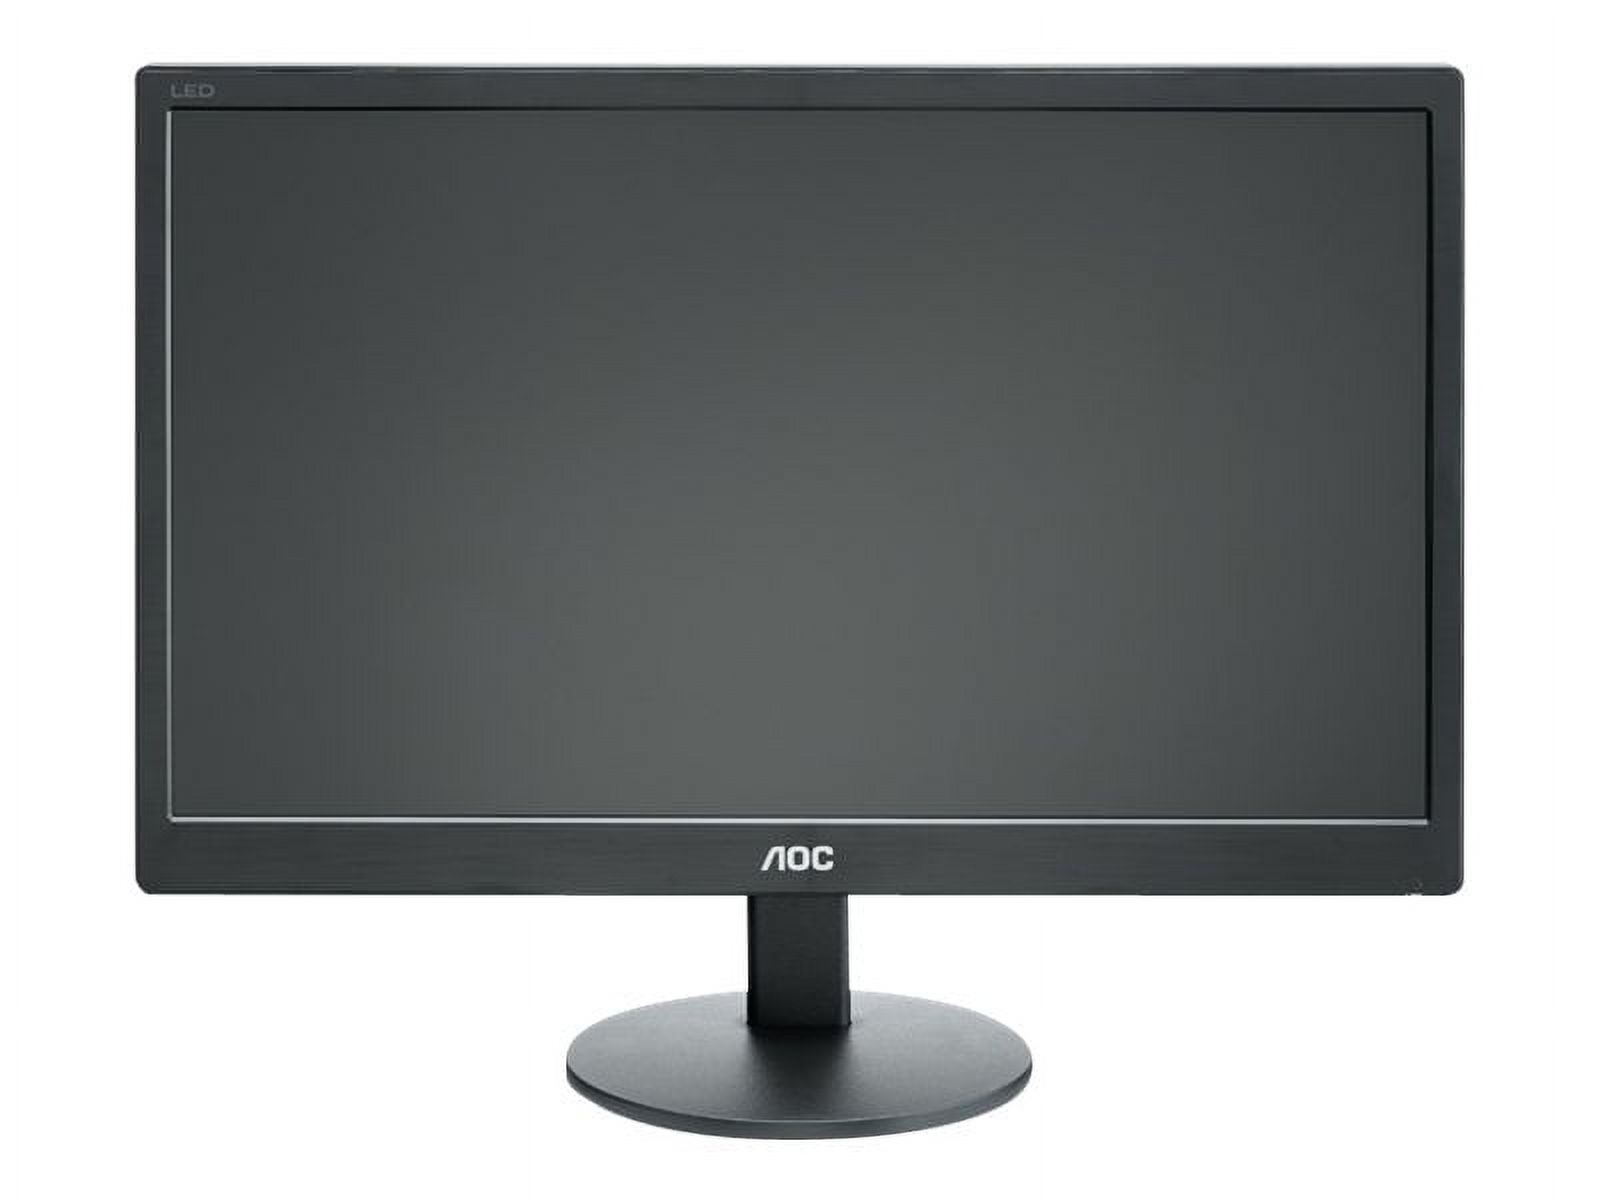 AOC E970SWN - LED monitor - 18.5" - 1366 x 768 @ 60 Hz - TN - 200 cd/m������ - 700:1 - 5 ms - VGA - black - image 2 of 6